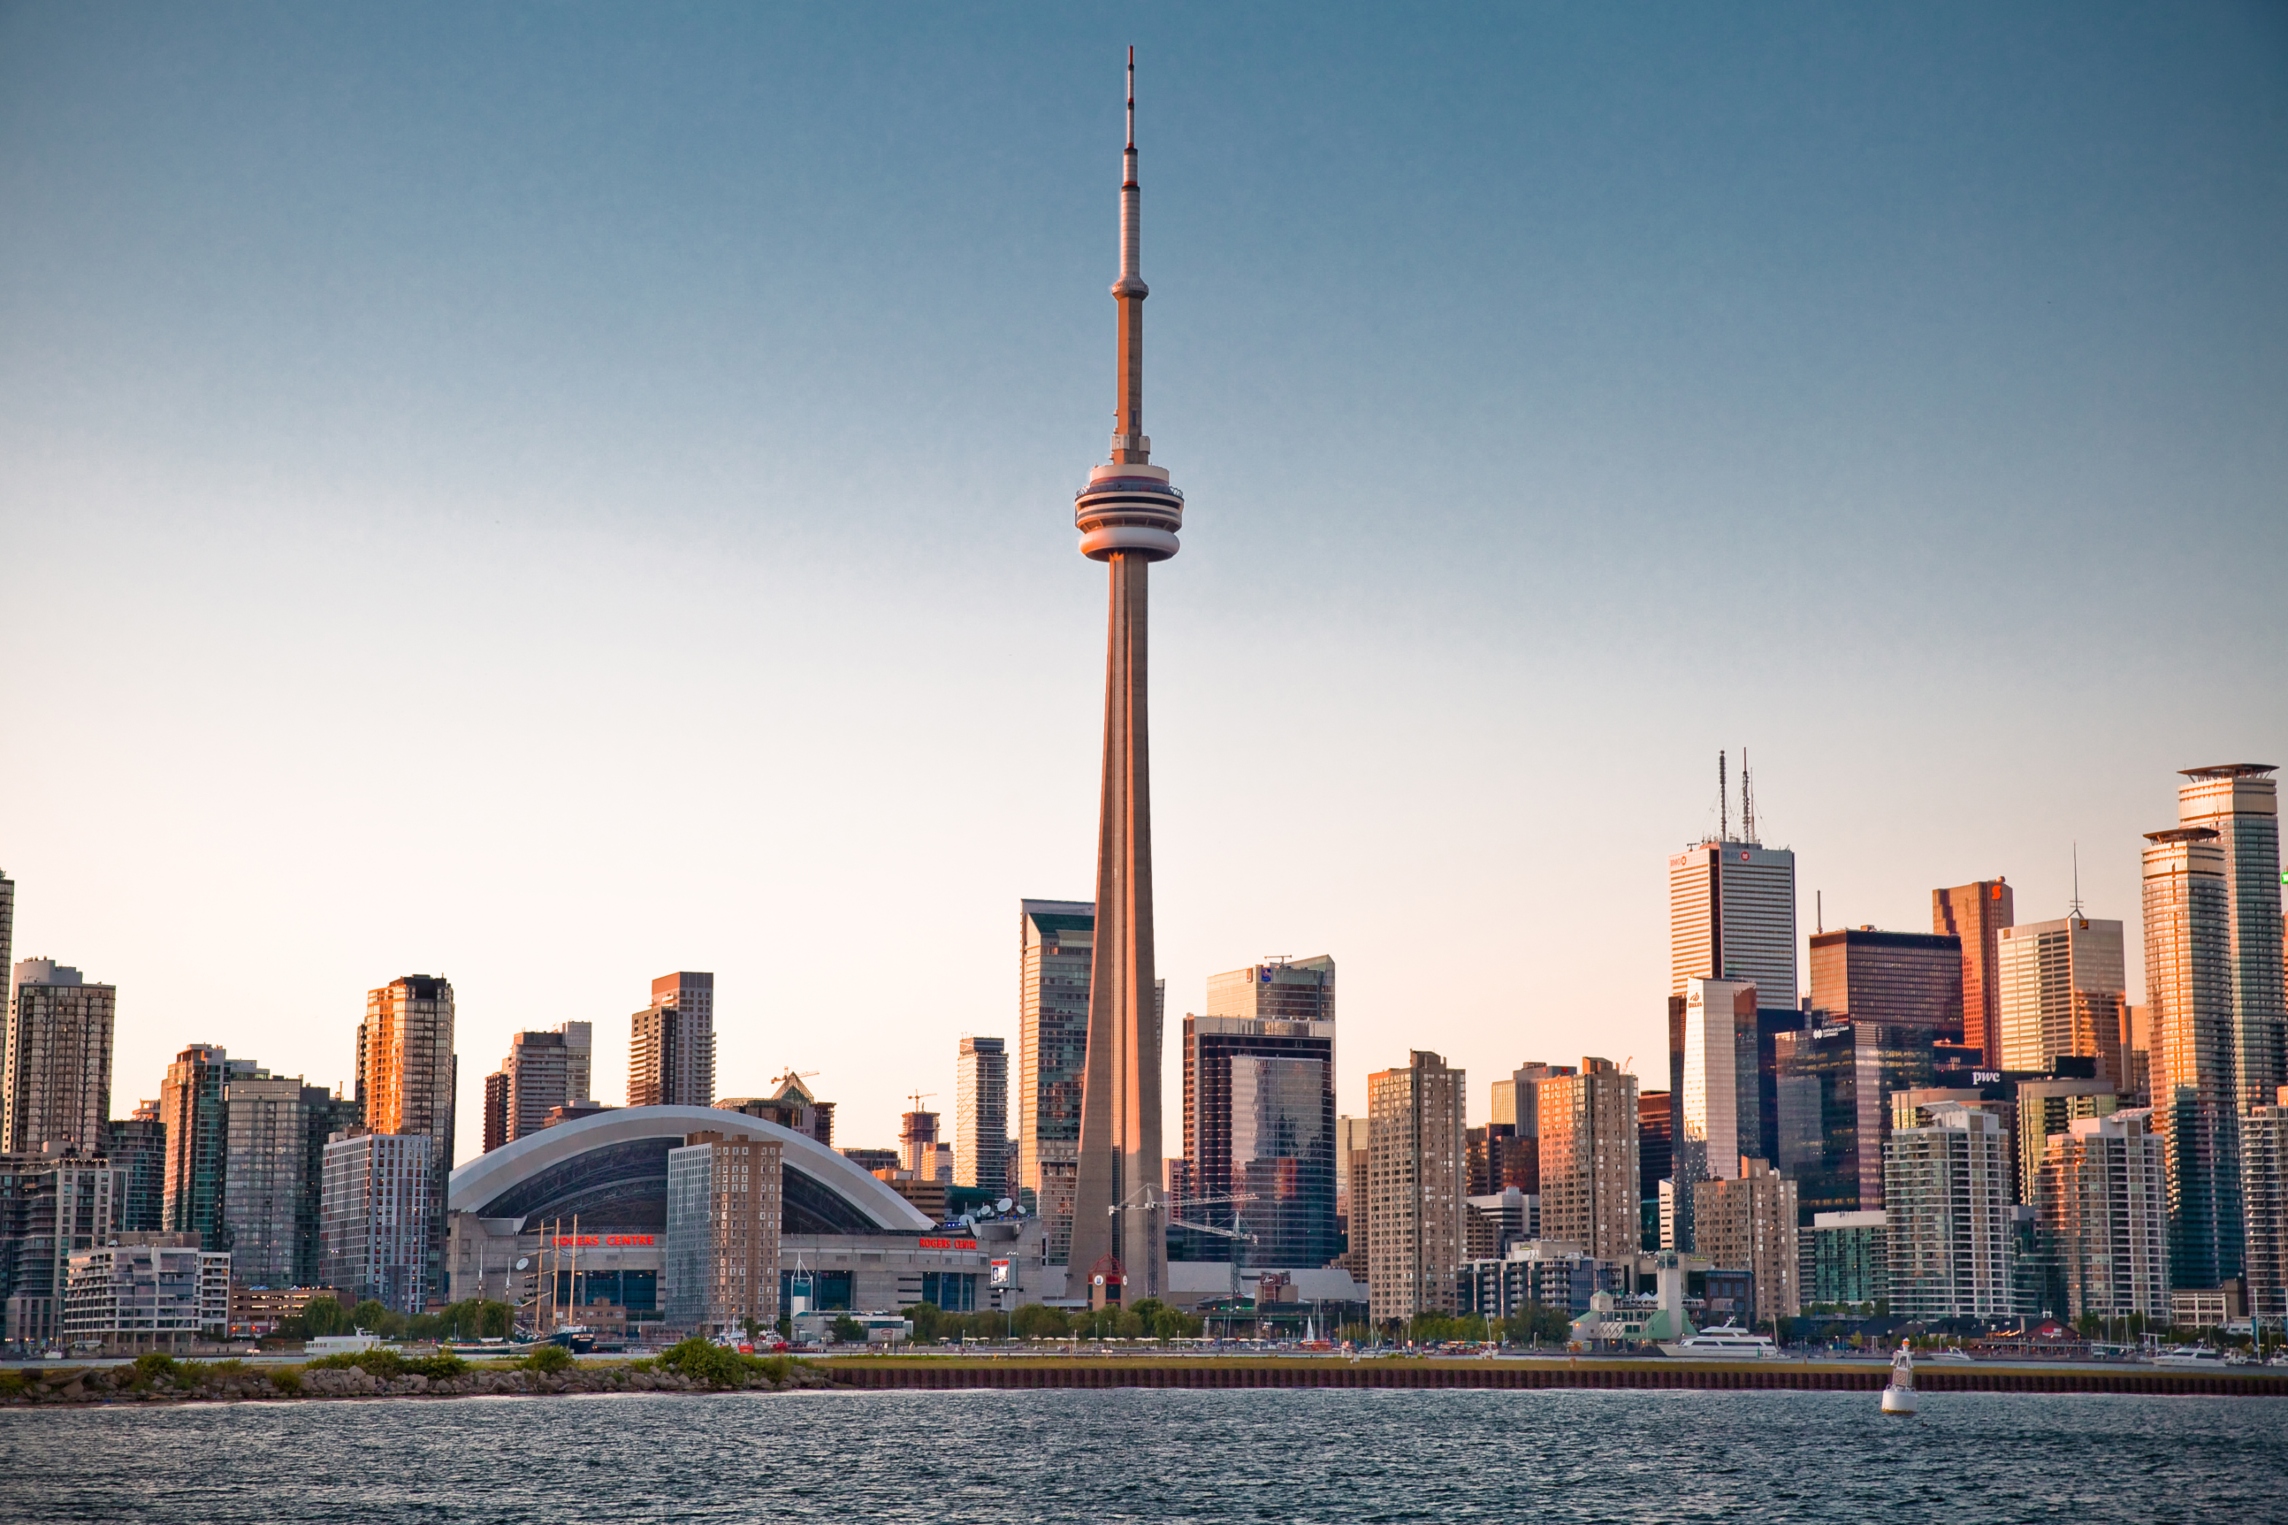 加拿大20个最浪漫城市,bc省包揽7个,排名第一的居然是这里